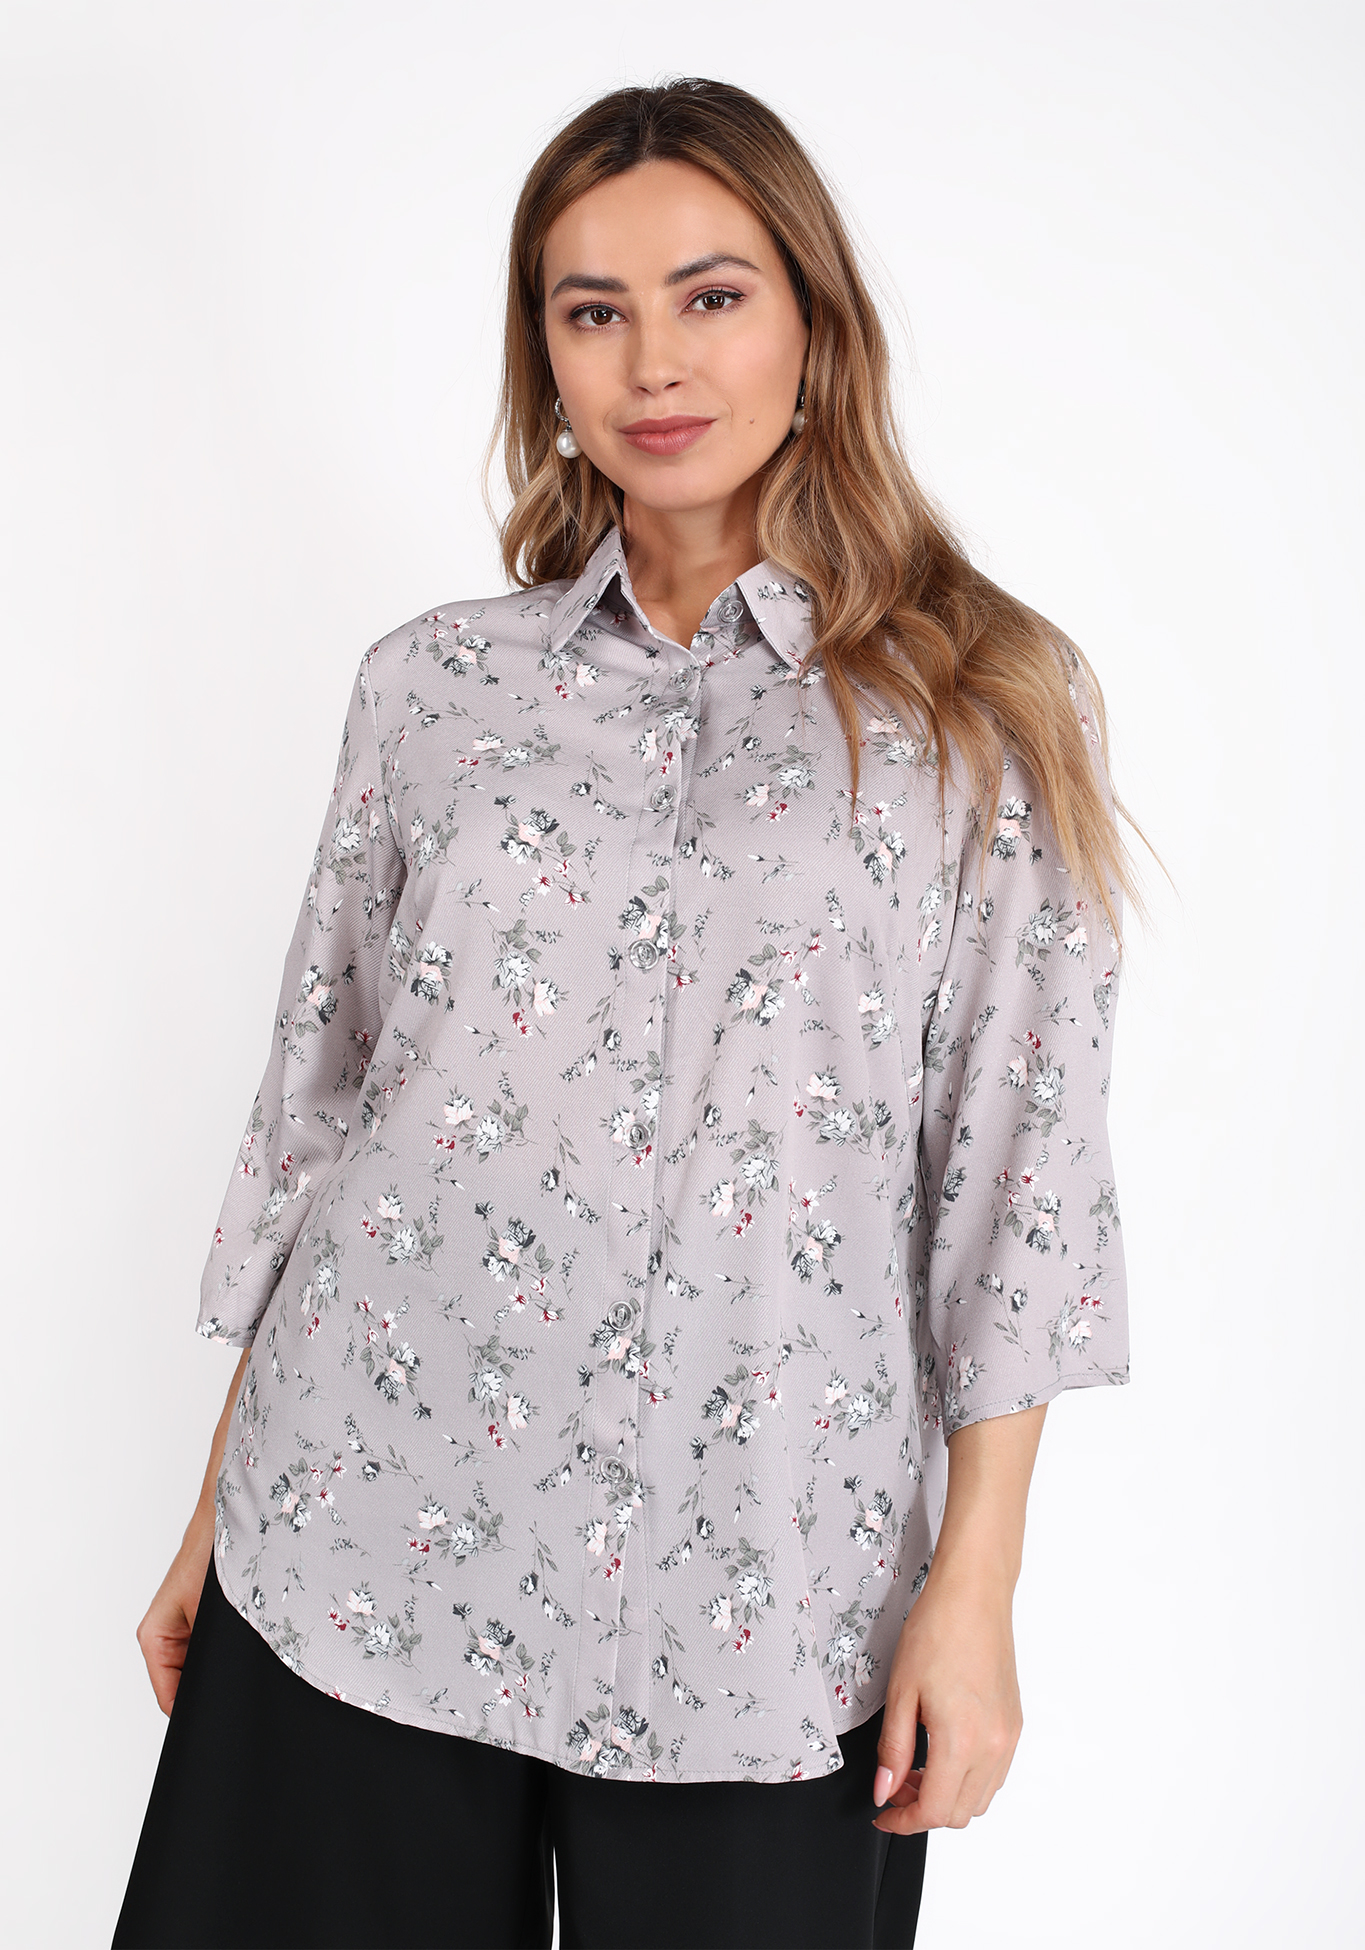 Рубашка на пуговицах с цветочным принтом Bianka Modeno, размер 50 свободная модель - фото 5